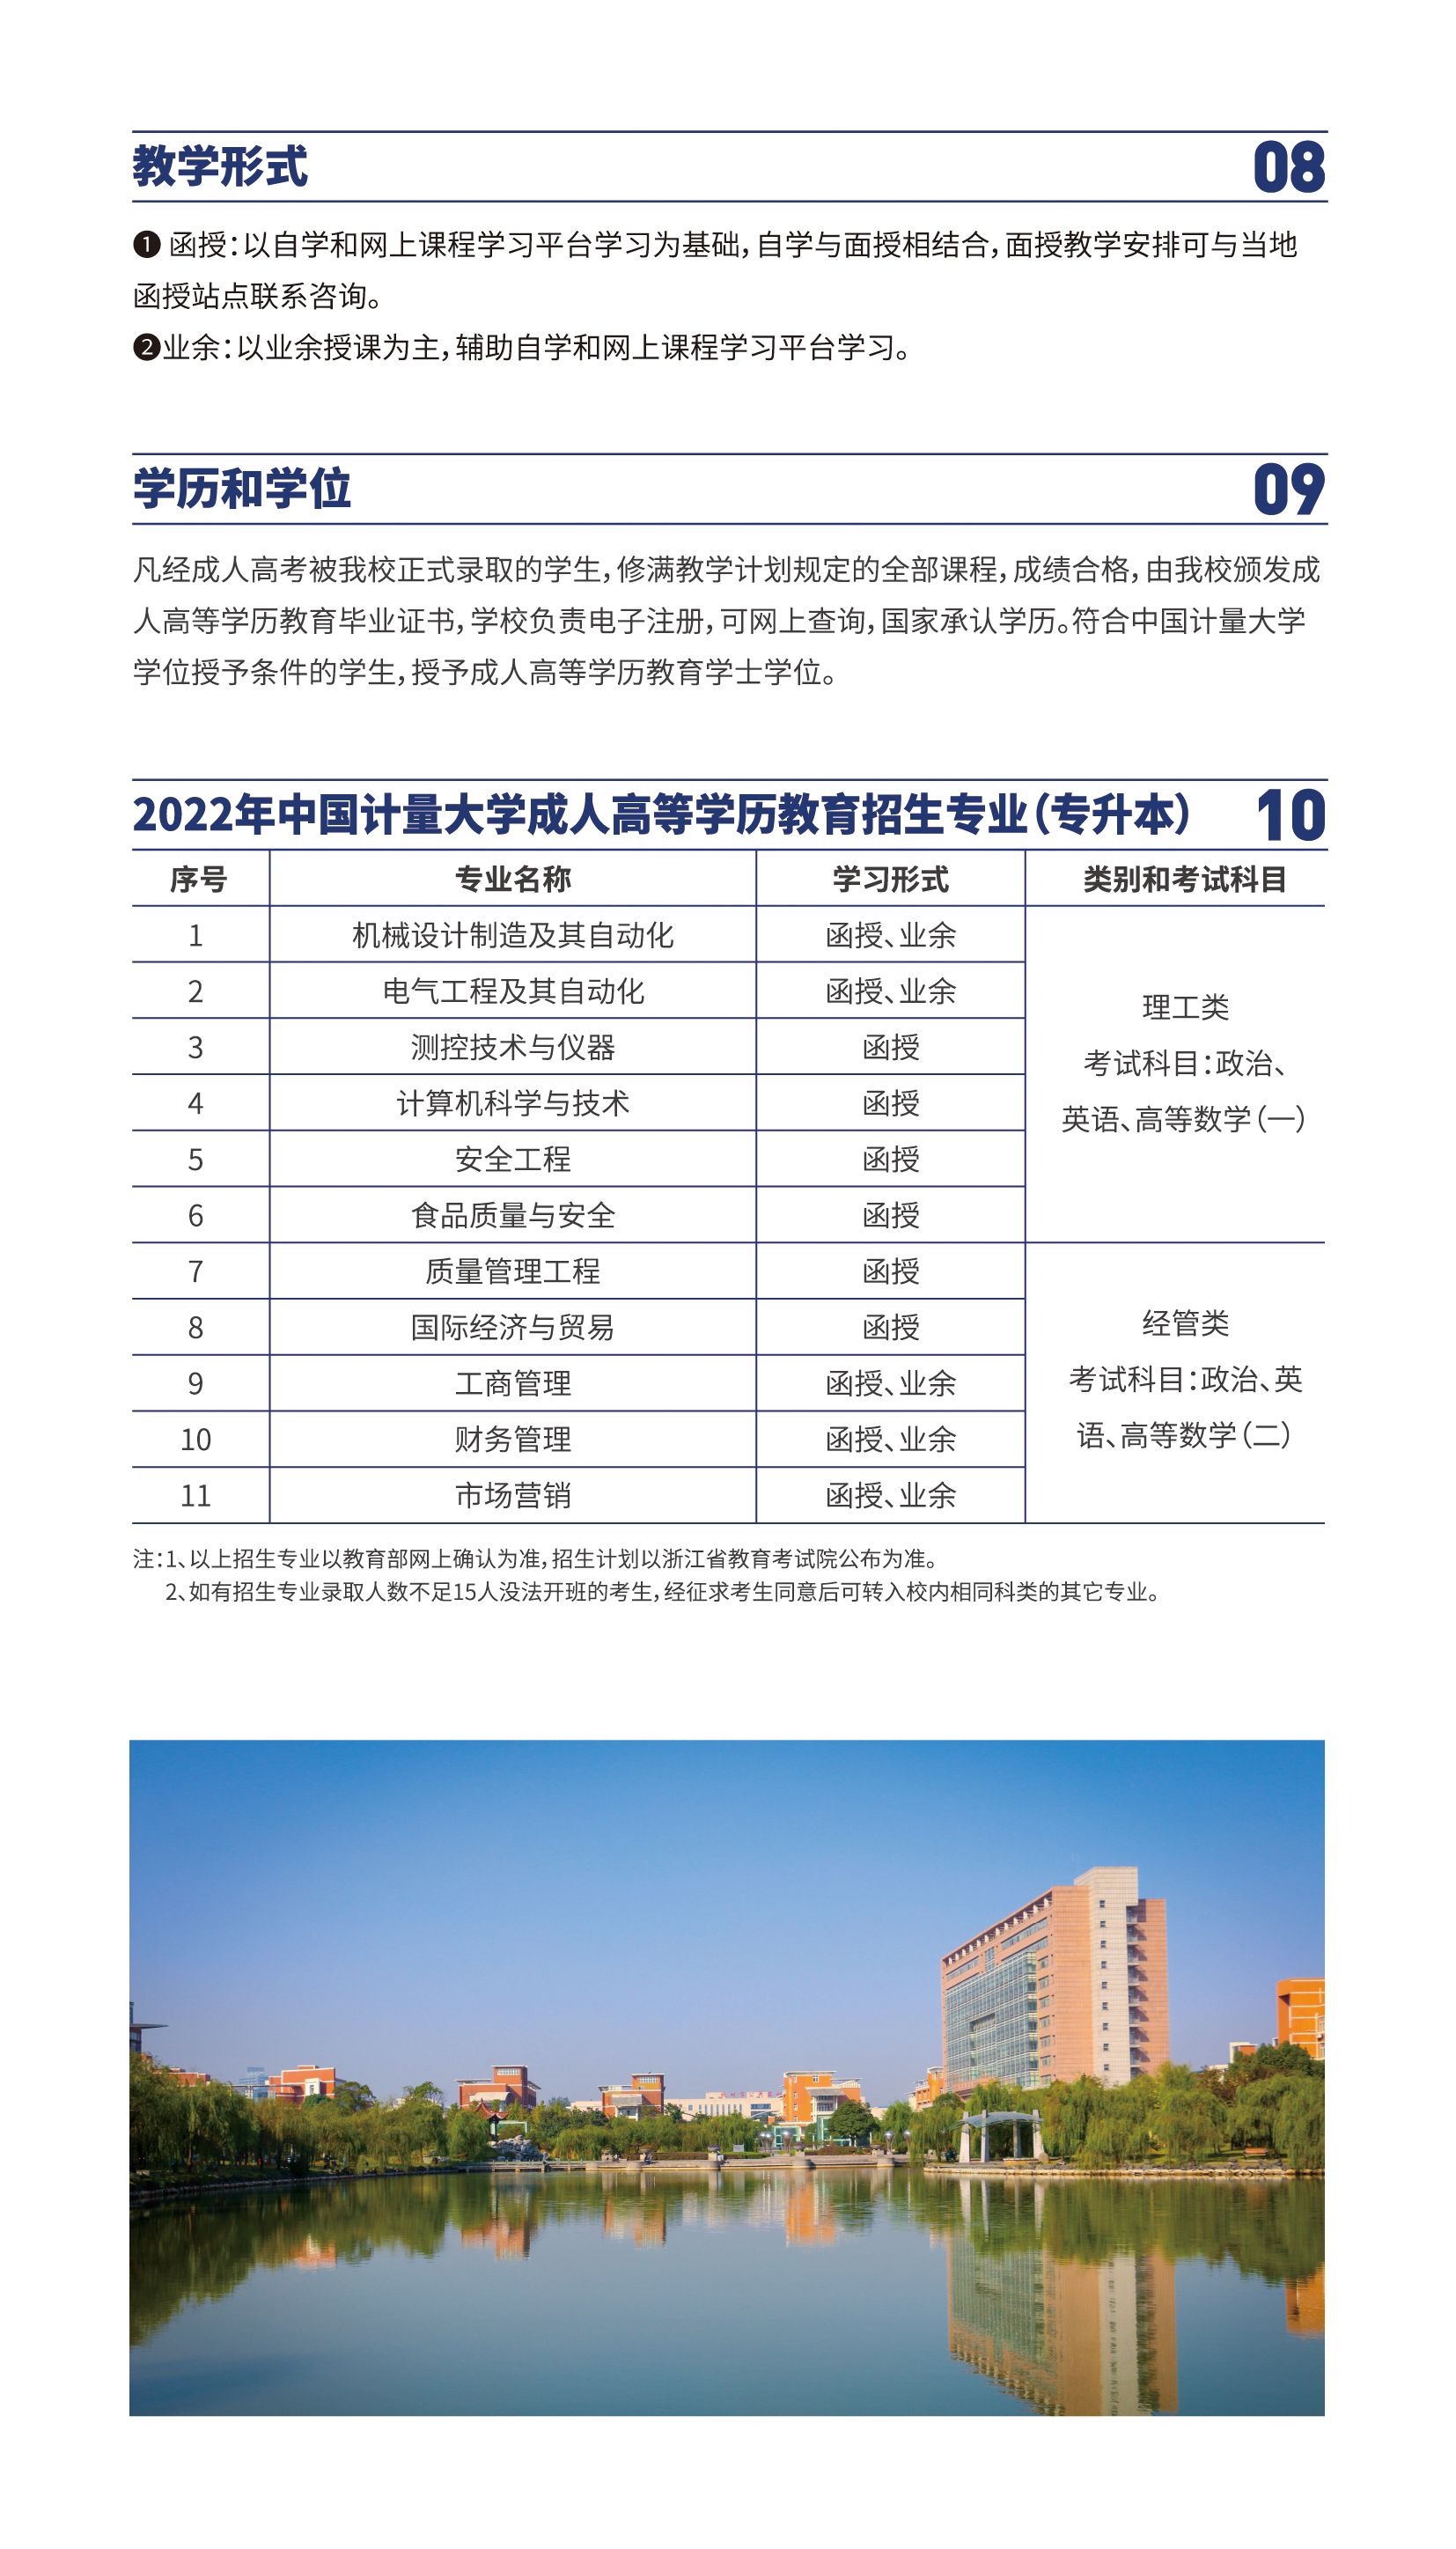 中国计量大学2022年成人高考招生简章